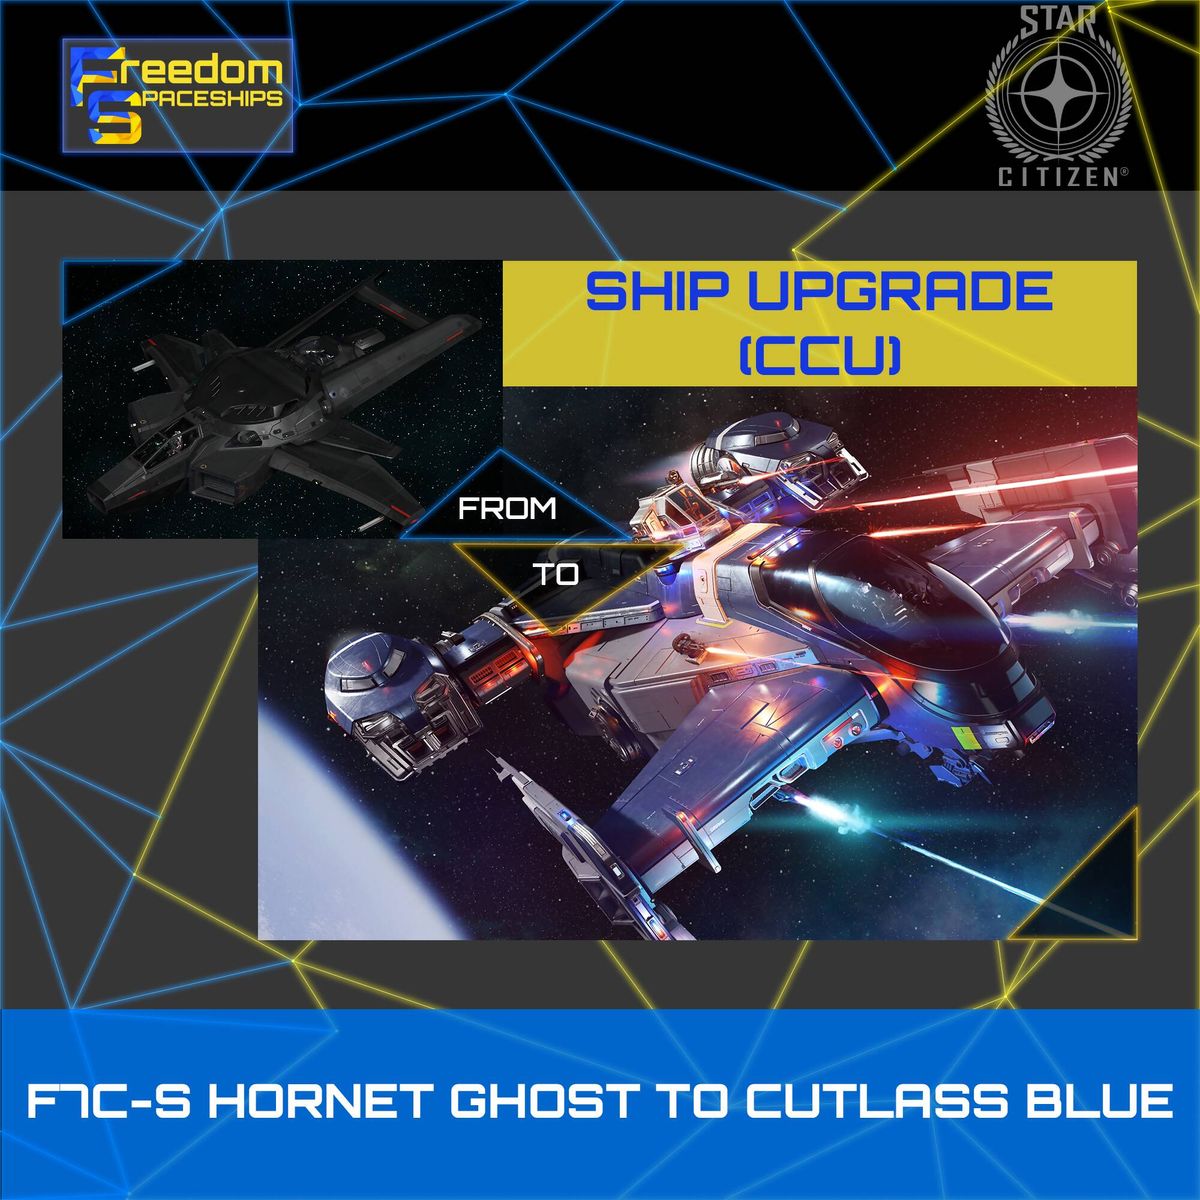 Upgrade - F7C-S Hornet Ghost to Cutlass Blue